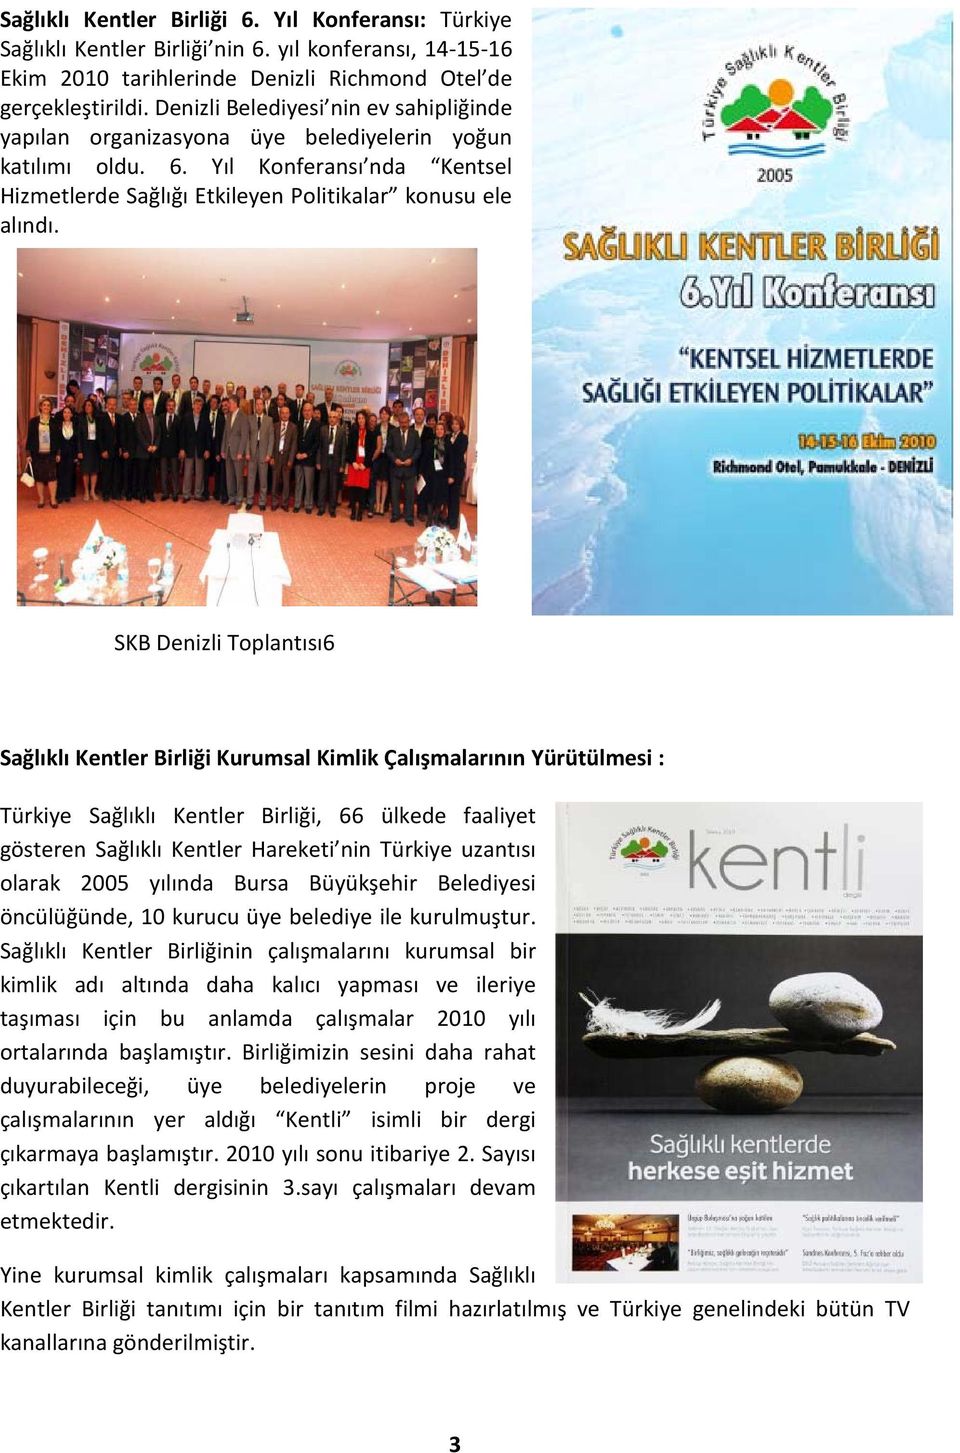 SKB Denizli Toplantısı6 Sağlıklı Kentler Birliği Kurumsal Kimlik Çalışmalarının Yürütülmesi : Türkiye Sağlıklı Kentler Birliği, 66 ülkede faaliyet gösteren Sağlıklı Kentler Hareketi nin Türkiye